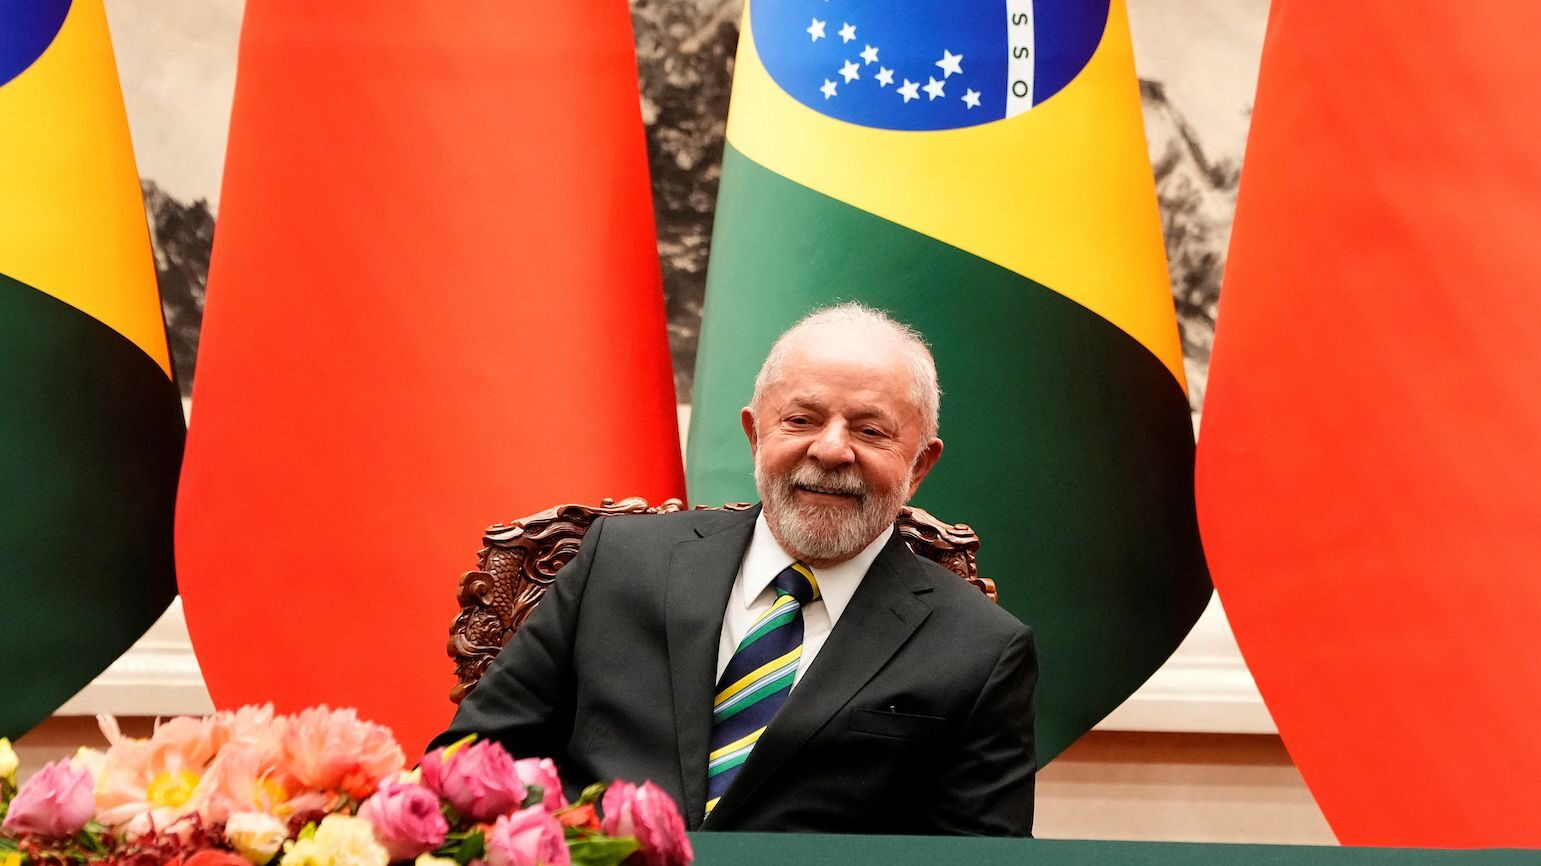 Lula duro: "Nessun neo-colonialismo verde con la scusa di proteggere l'ambiente"